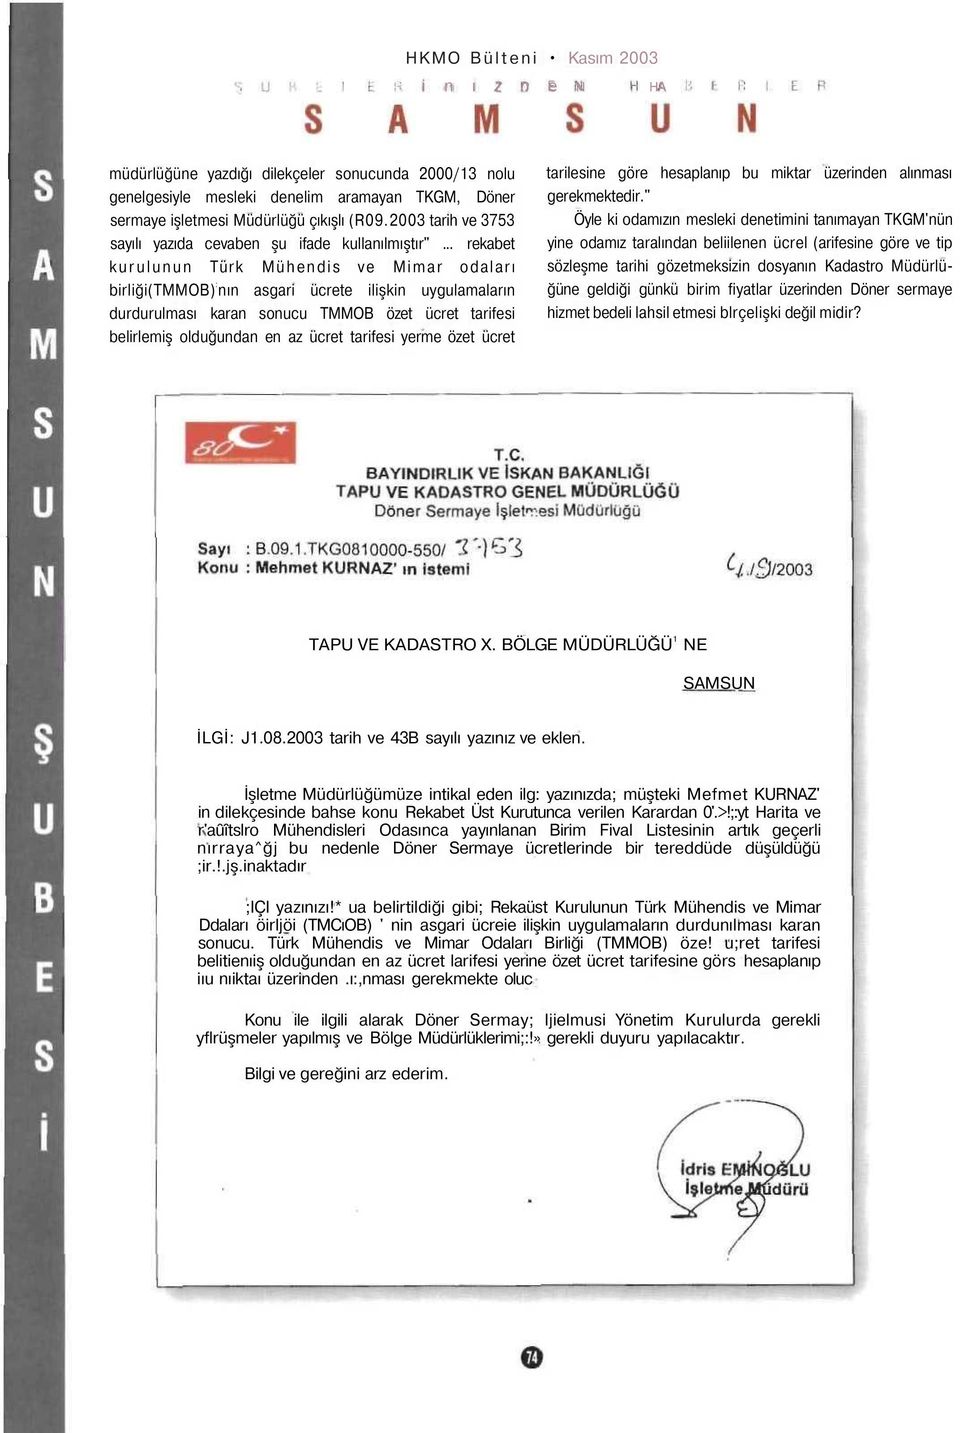 .. rekabet kurulunun Türk Mühendis ve Mimar odaları birliği(tmmob) : nın asgari ücrete ilişkin uygulamaların durdurulması karan sonucu TMMOB özet ücret tarifesi belirlemiş olduğundan en az ücret